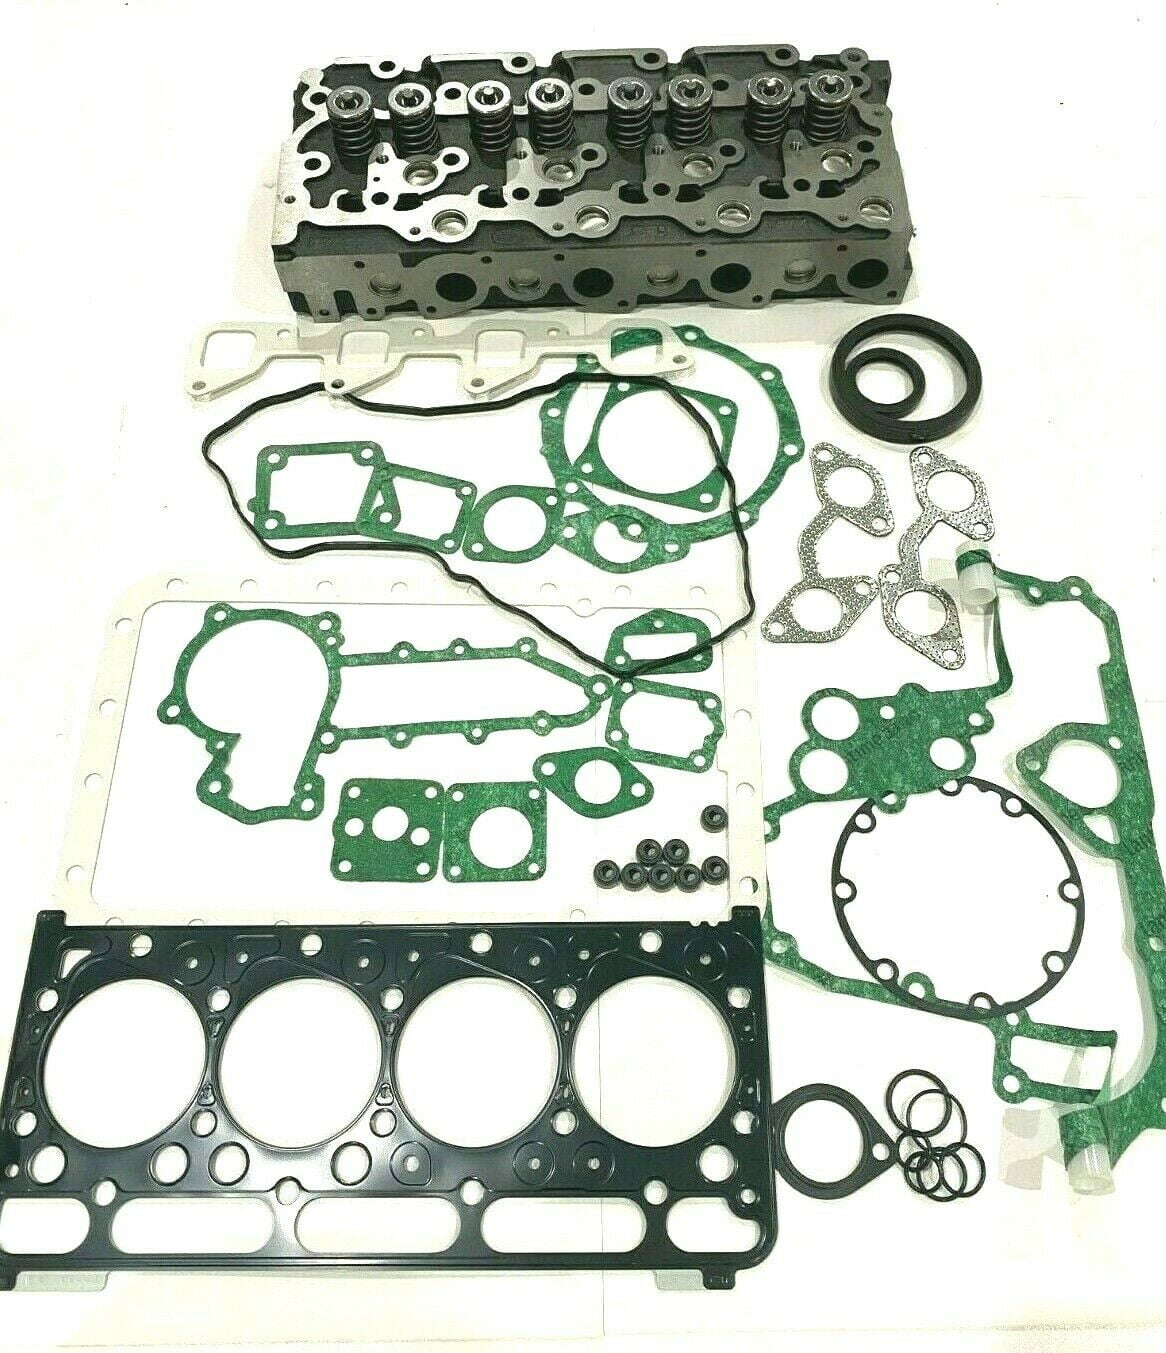 Arko Tractor Parts Cylinder Head Complete with Full Gasket Set Replacement for Kubota V2203 V2203T V2203E V2203B V2203-M-DI STD 16429-0304 - 5